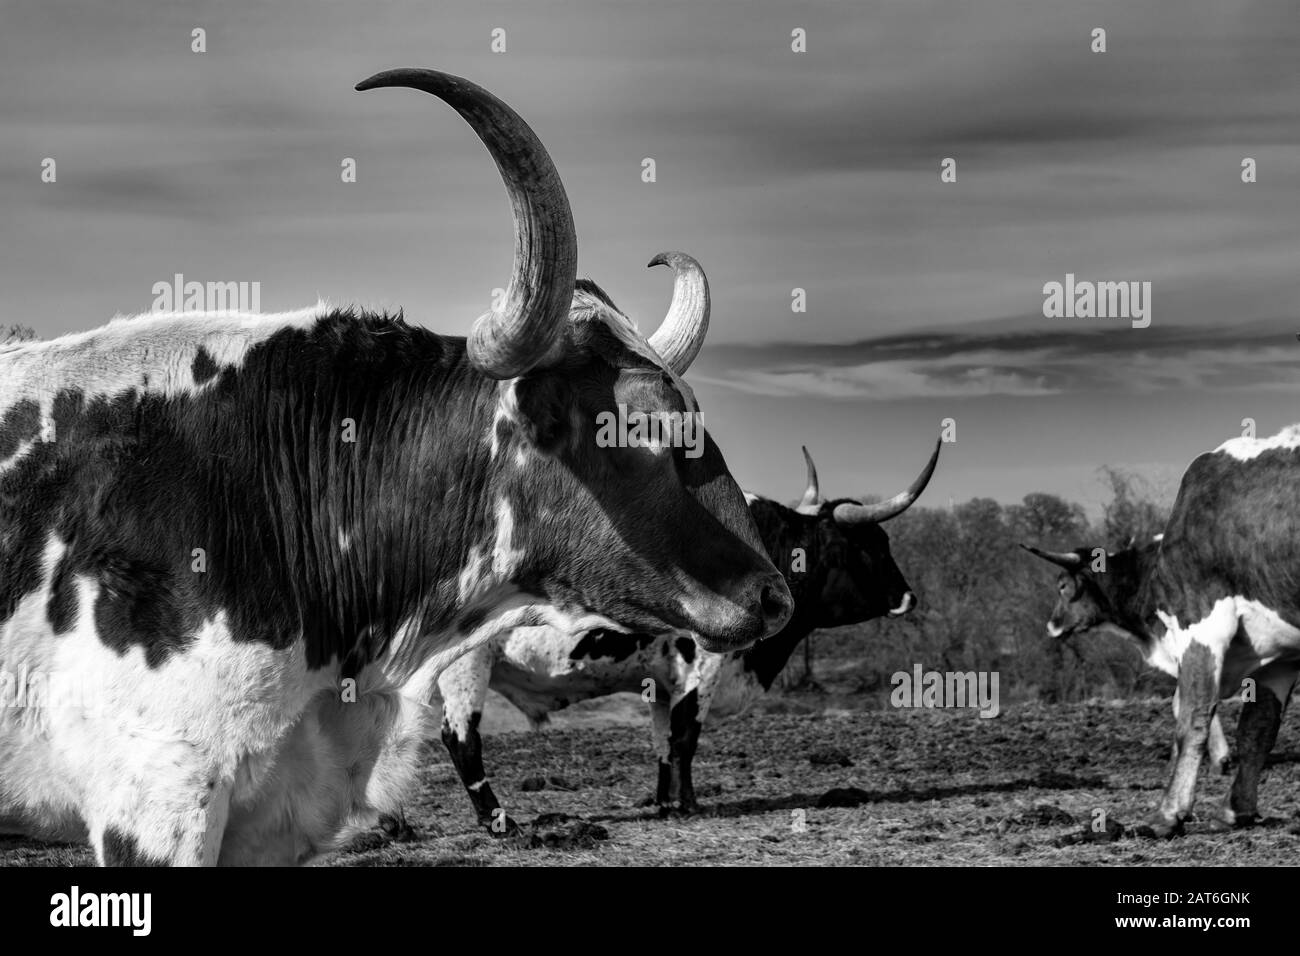 Un profil de proximité de la tête et de longues cornes incurvées et tranchantes d'un grand taureau de Longhorn debout dans un pâturage avec d'autres bovins dans son troupeau. Banque D'Images